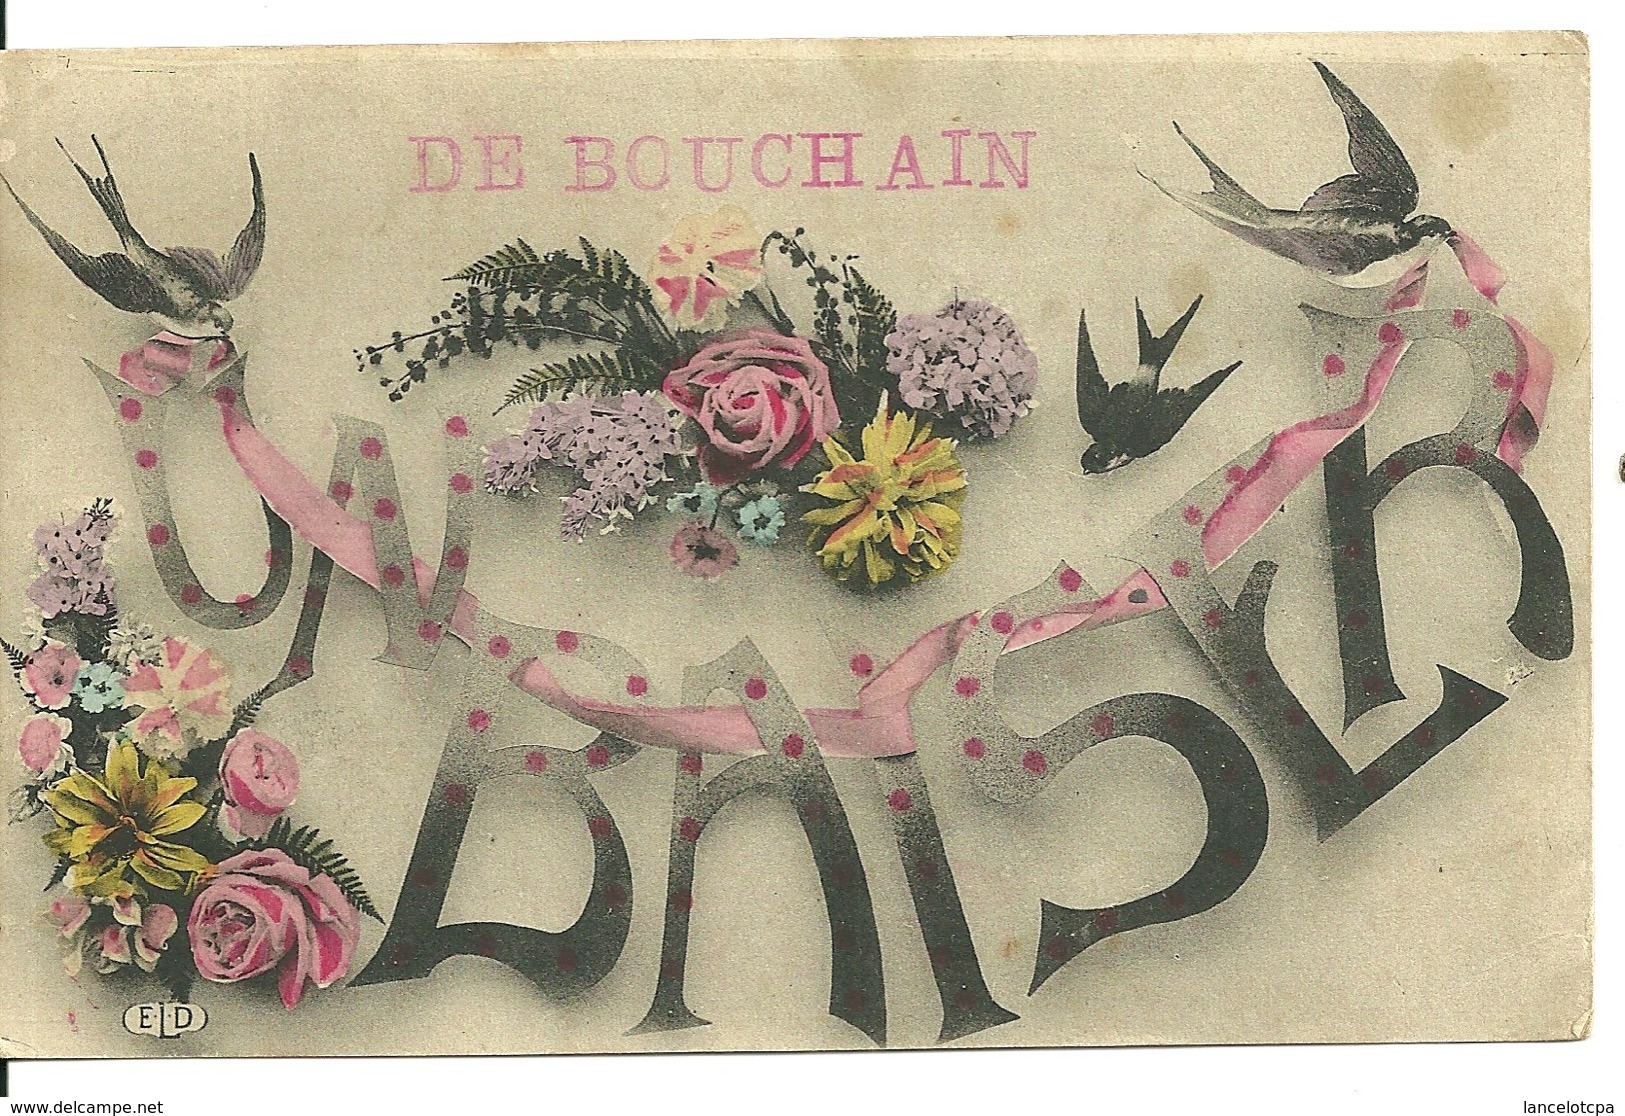 59 - BOUCHAIN / De BOUCHAIN UN BAISER - Bouchain